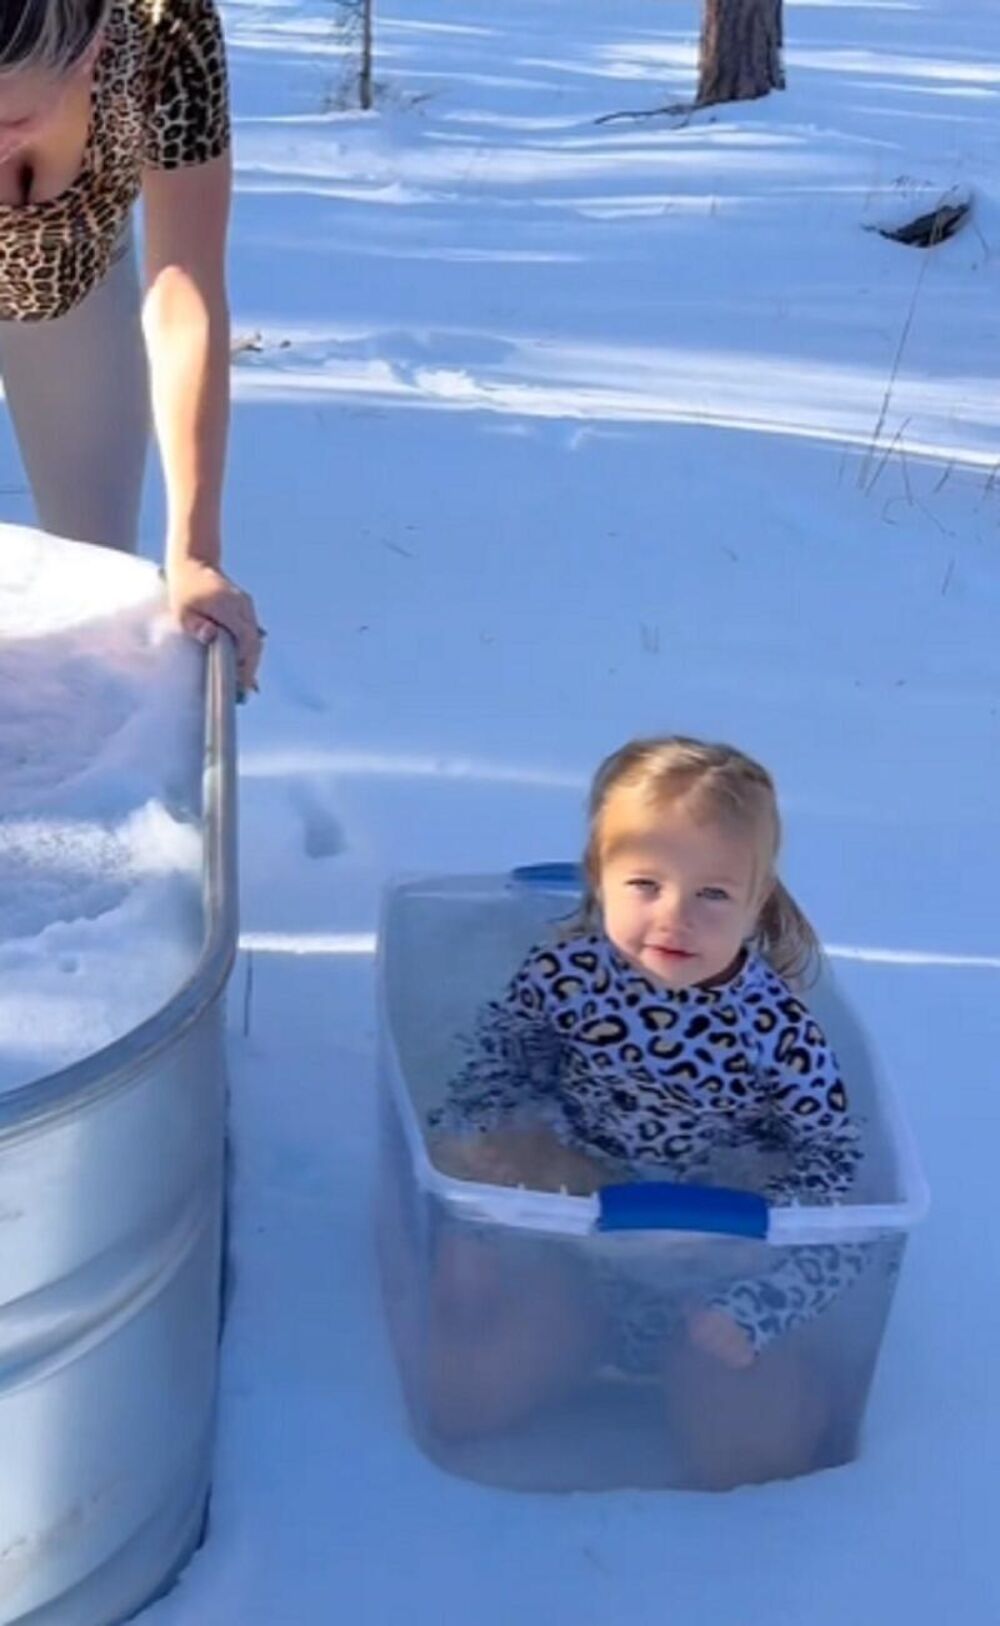 Majka je stavila devojčicu u  kadu sa ledenom vodom